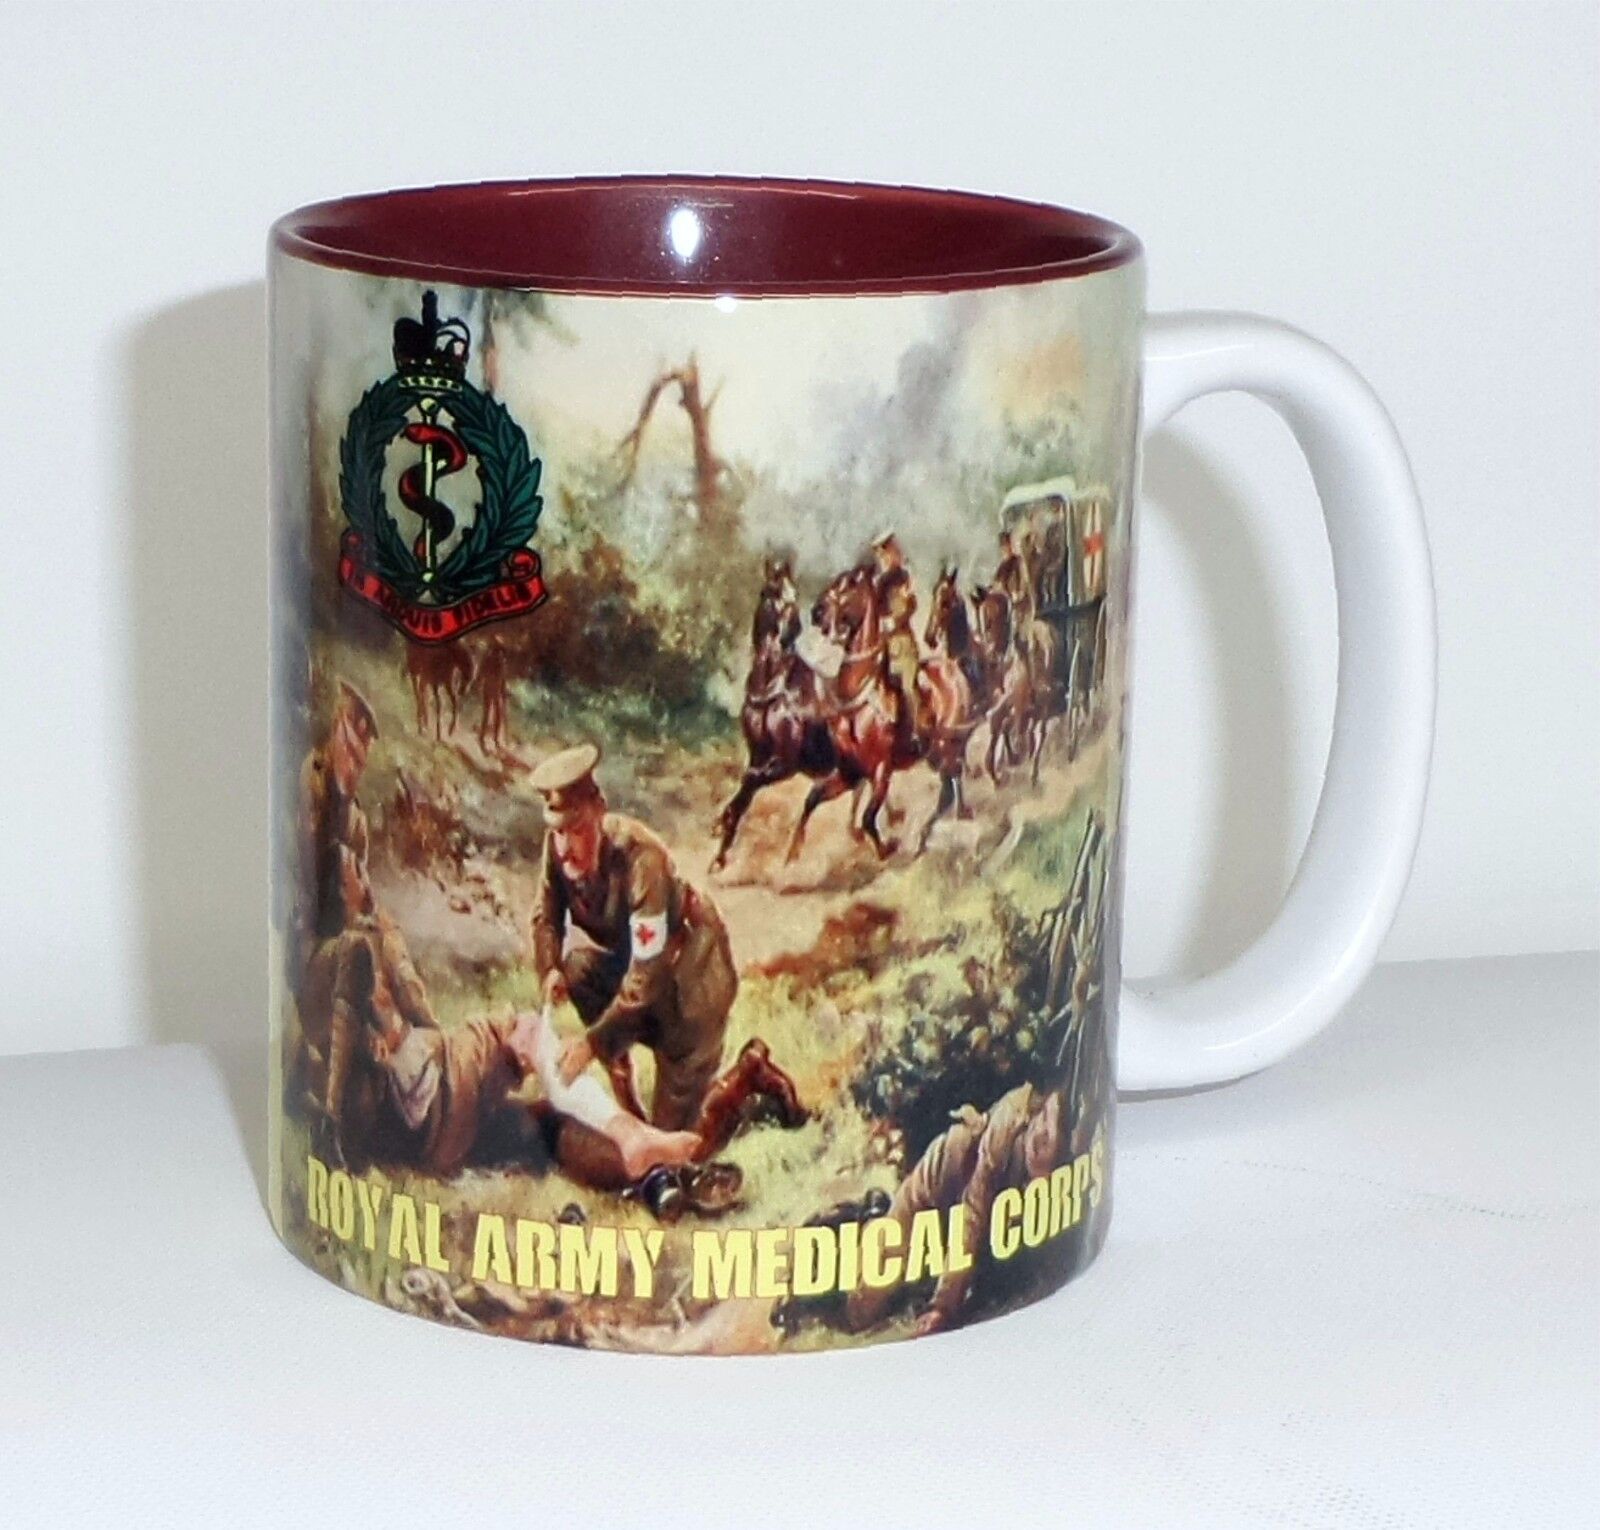 RAMC Mug Royal Army Medical Corps Mug Cup